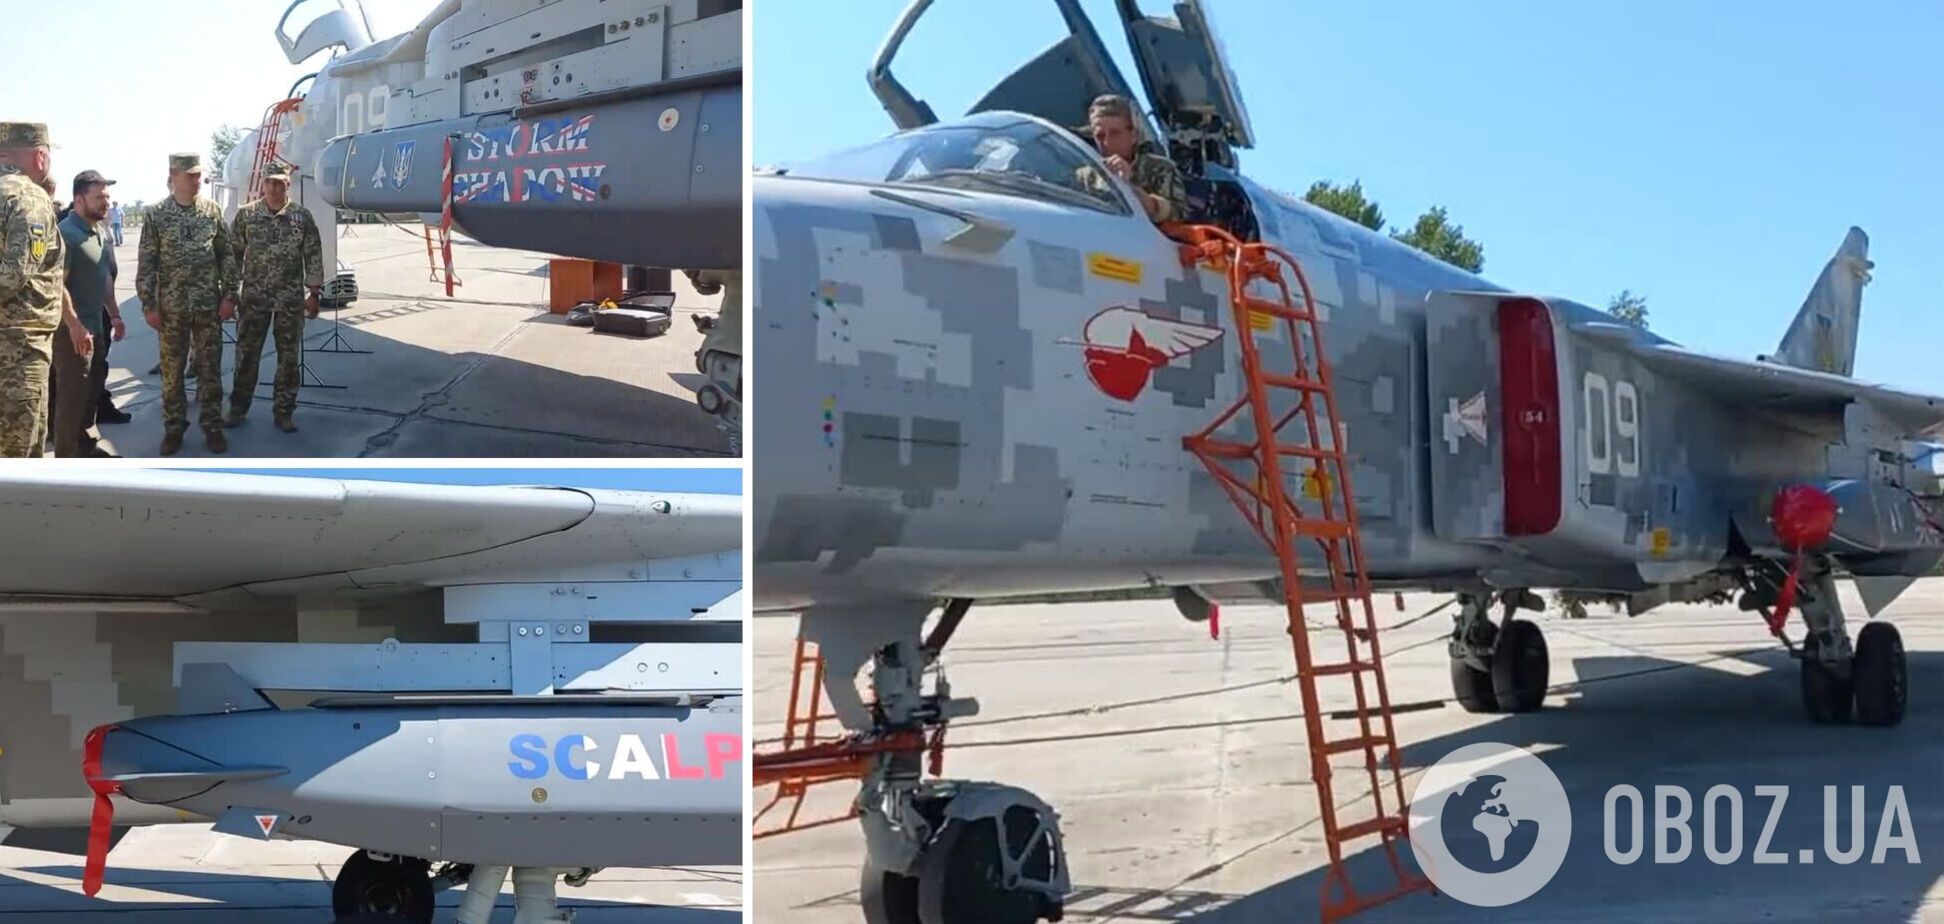 Под левым крылом Storm Shadow, под правым – Scalp: в Воздушных силах ВСУ показали комплектацию бомбардировщика Су-24М. Видео